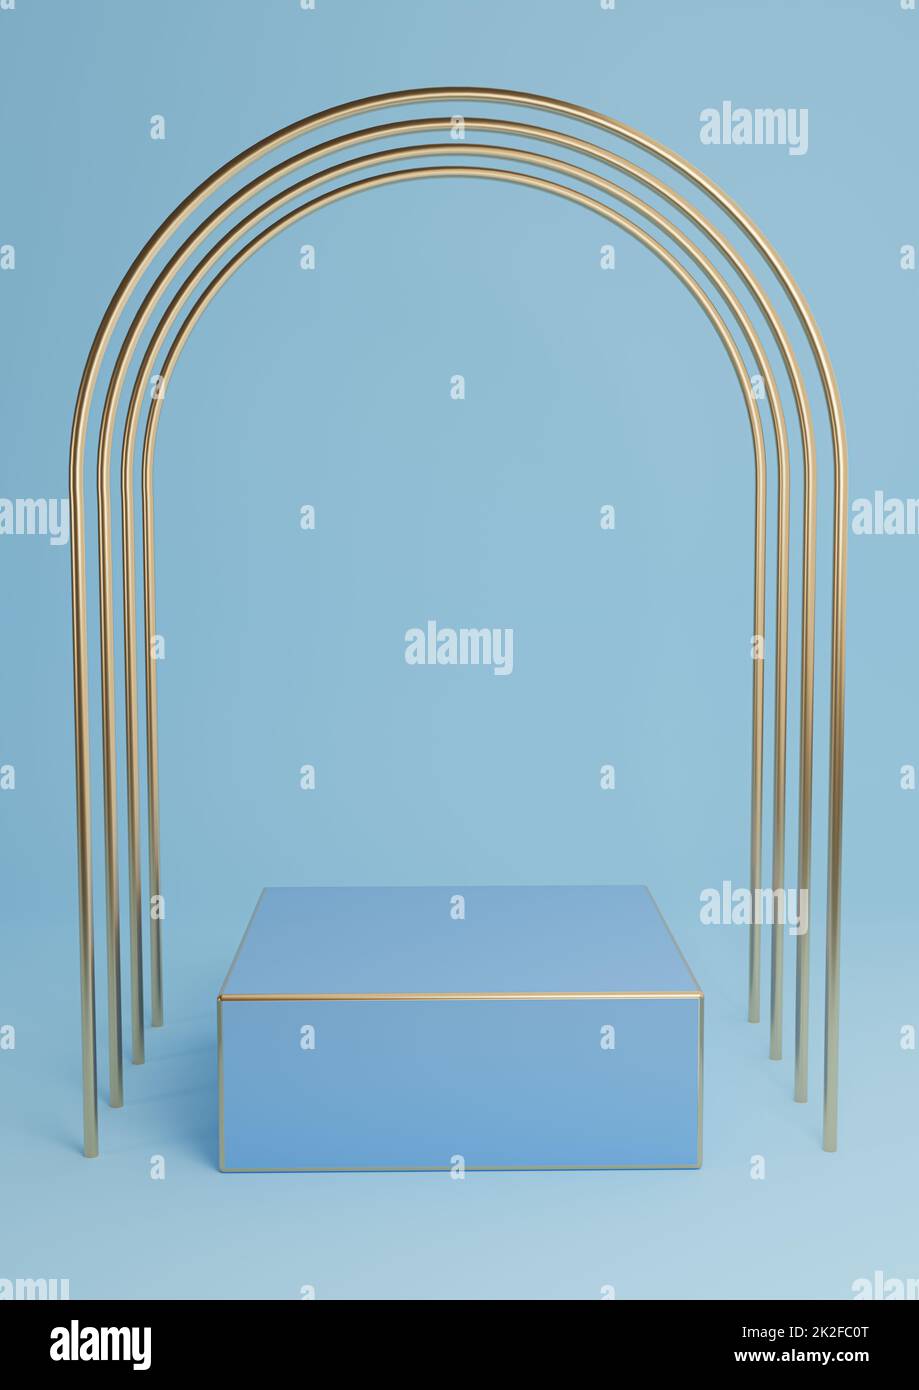 Helles, helles Himmelblau 3D für minimalistische Produktpräsentation Würfelpodium oder Ständer mit luxuriösen goldenen Bögen und goldenen Linien. Einfache abstrakte Hintergrundkomposition. Stockfoto